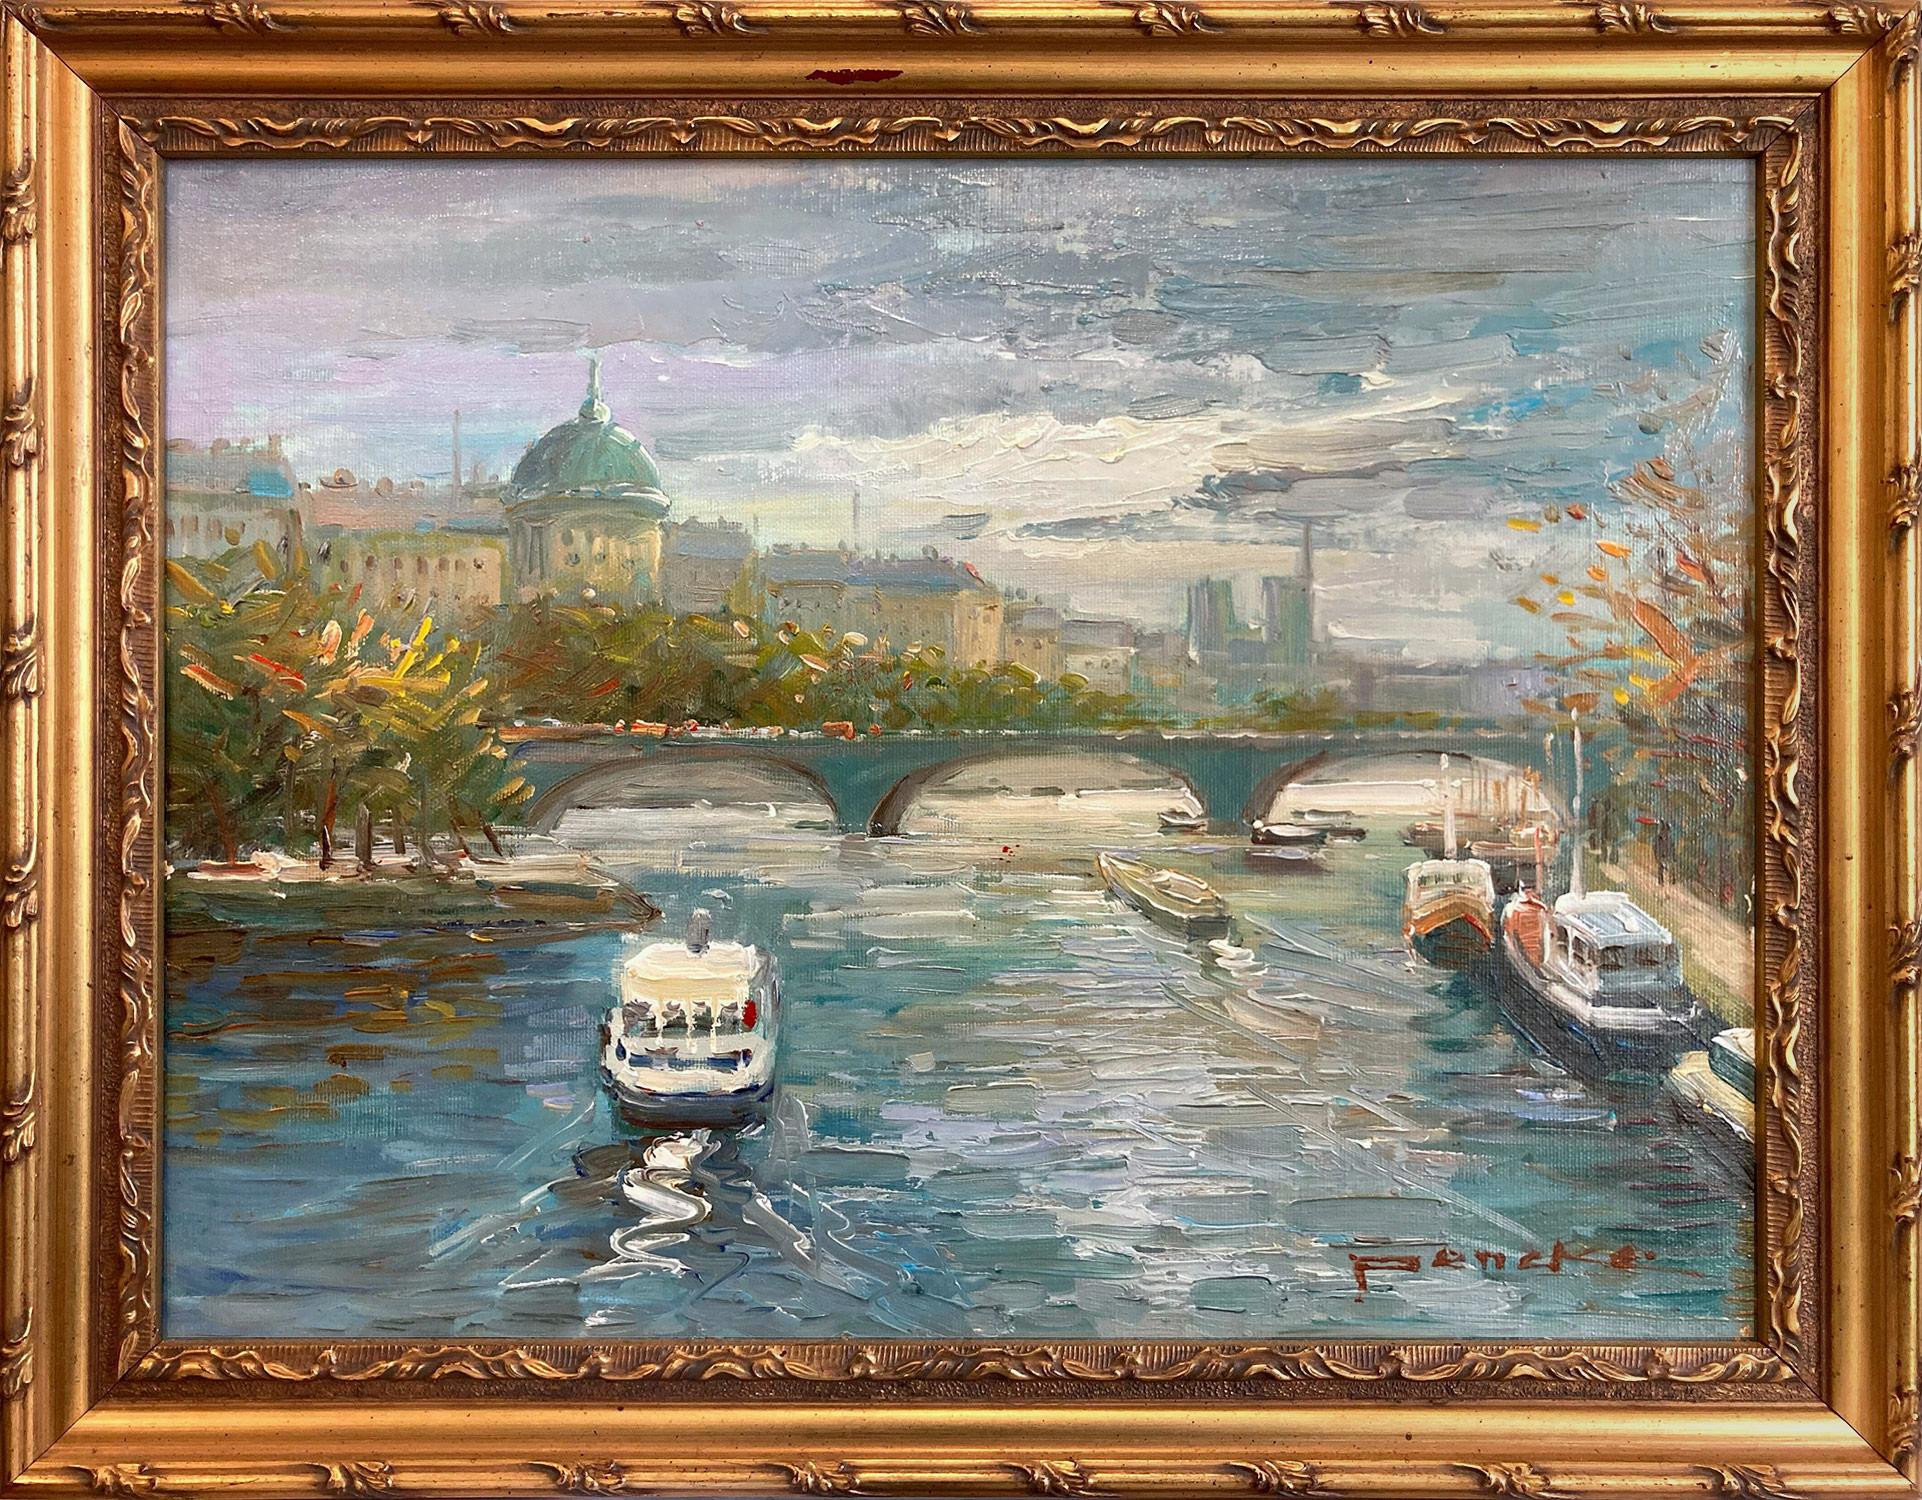 Figurative Painting Te Pencke - « Overlooking the Seine », peinture à l'huile post-impressionniste d'une scène de rue parisienne